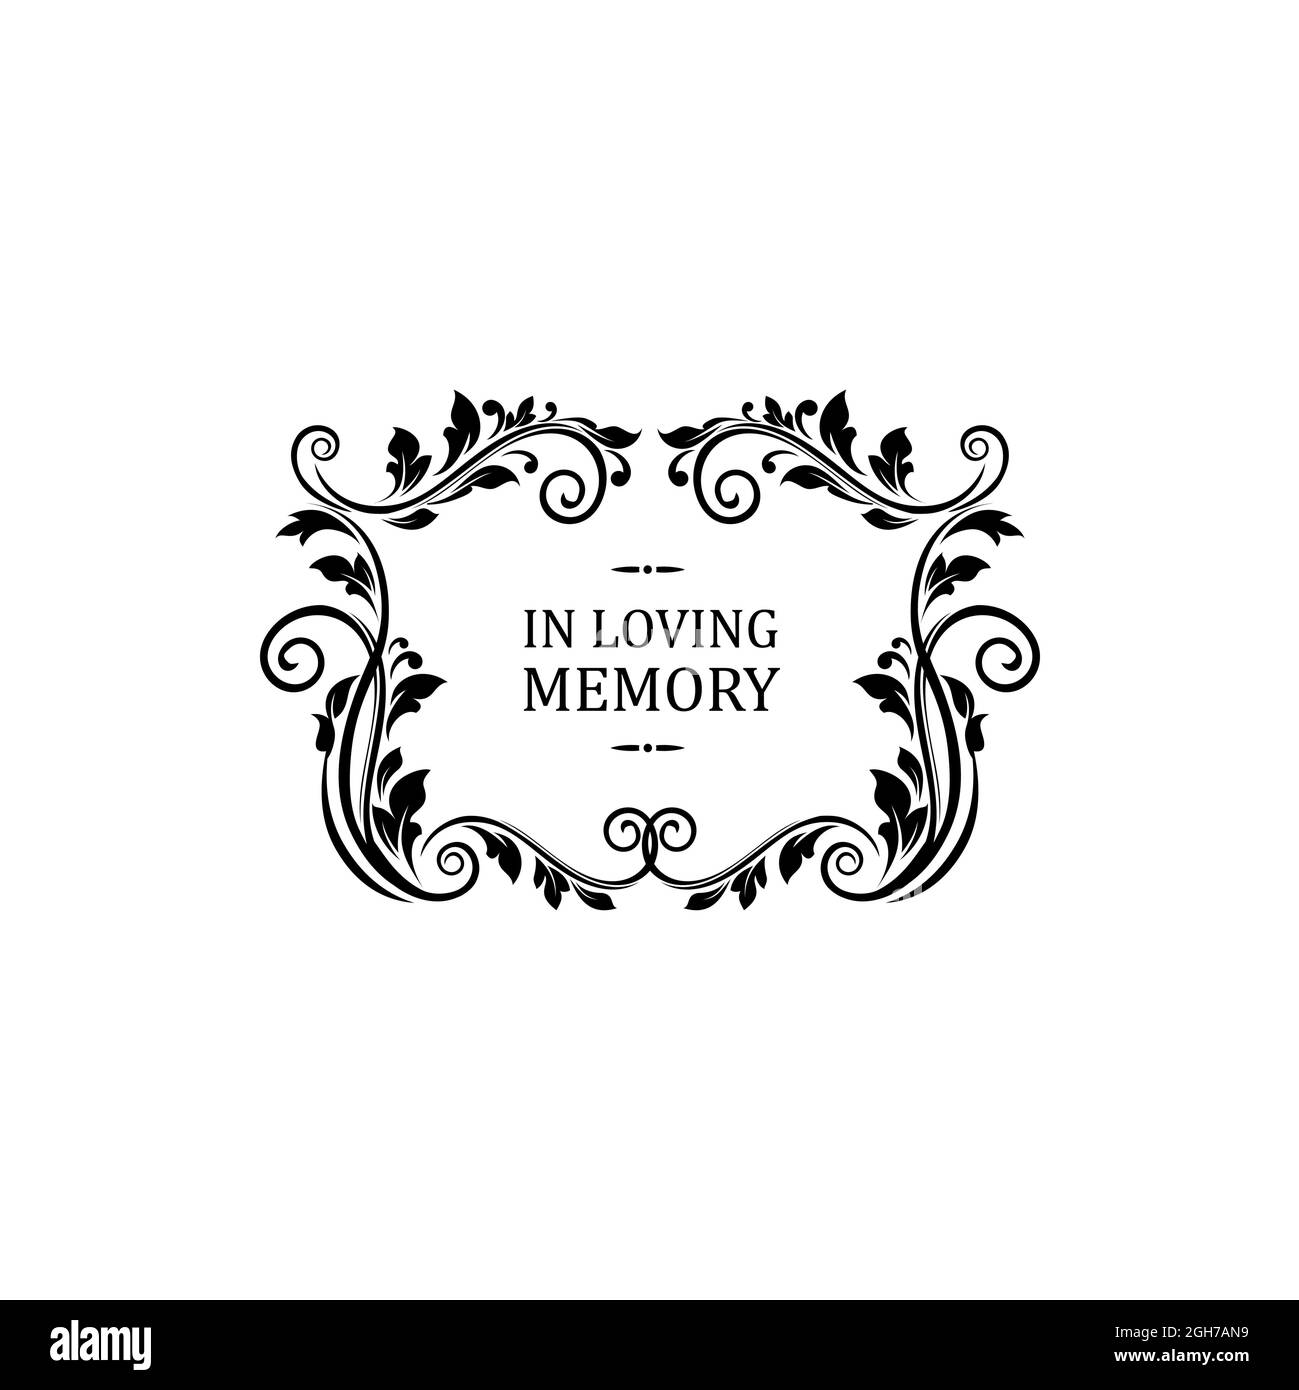 Message de condoléances dans la mémoire aimant lettrage isolé. Commémoration funéraire vectorielle, inscription sur pierre tombale, cadre floral avec vintag Illustration de Vecteur